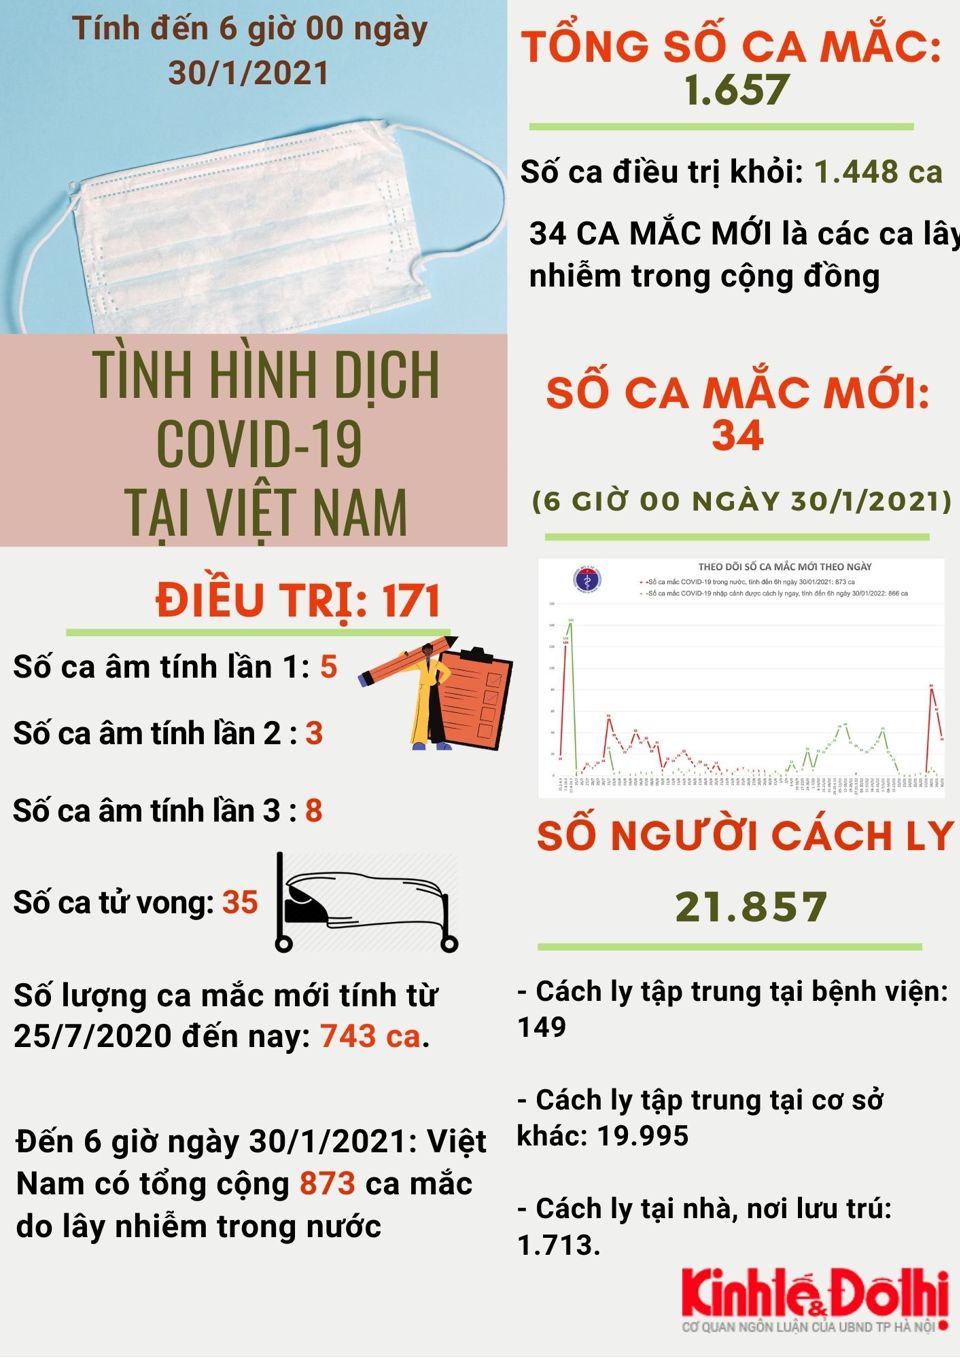 [Infographic] Việt Nam có 873 ca mắc do lây nhiễm trong nước - Ảnh 1